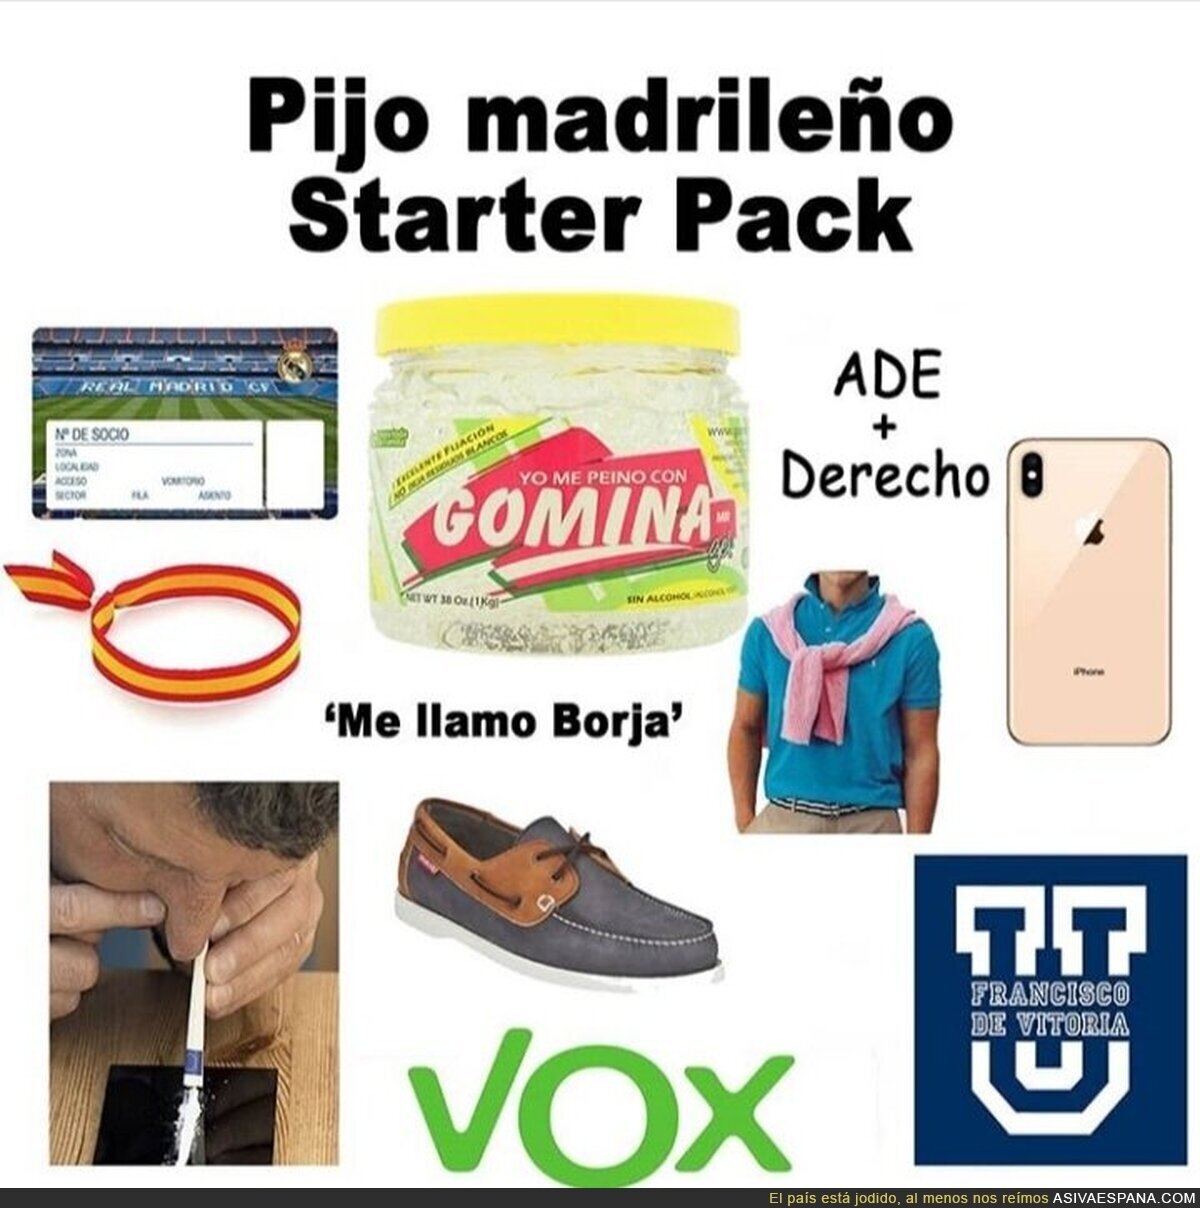 Pijo madrileño starter pack